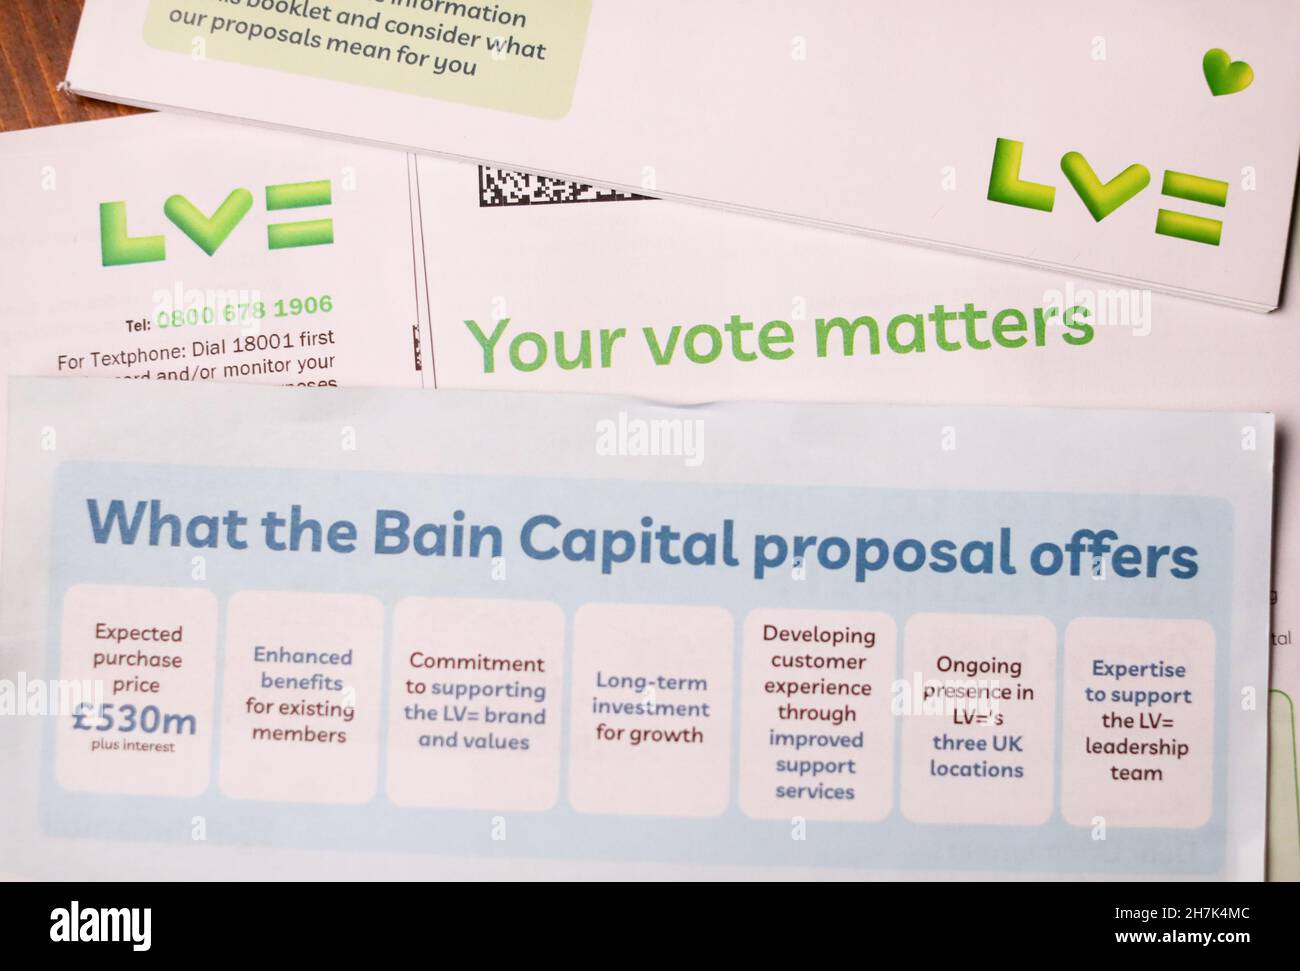 L'assureur britannique LV=, connu sous le nom de Liverpool Victoria, a adressé une lettre aux membres pour avoir voté sur la proposition de prise de pouvoir de 530 millions de livres sterling par le groupe américain de capital-investissement bain Capital. Banque D'Images